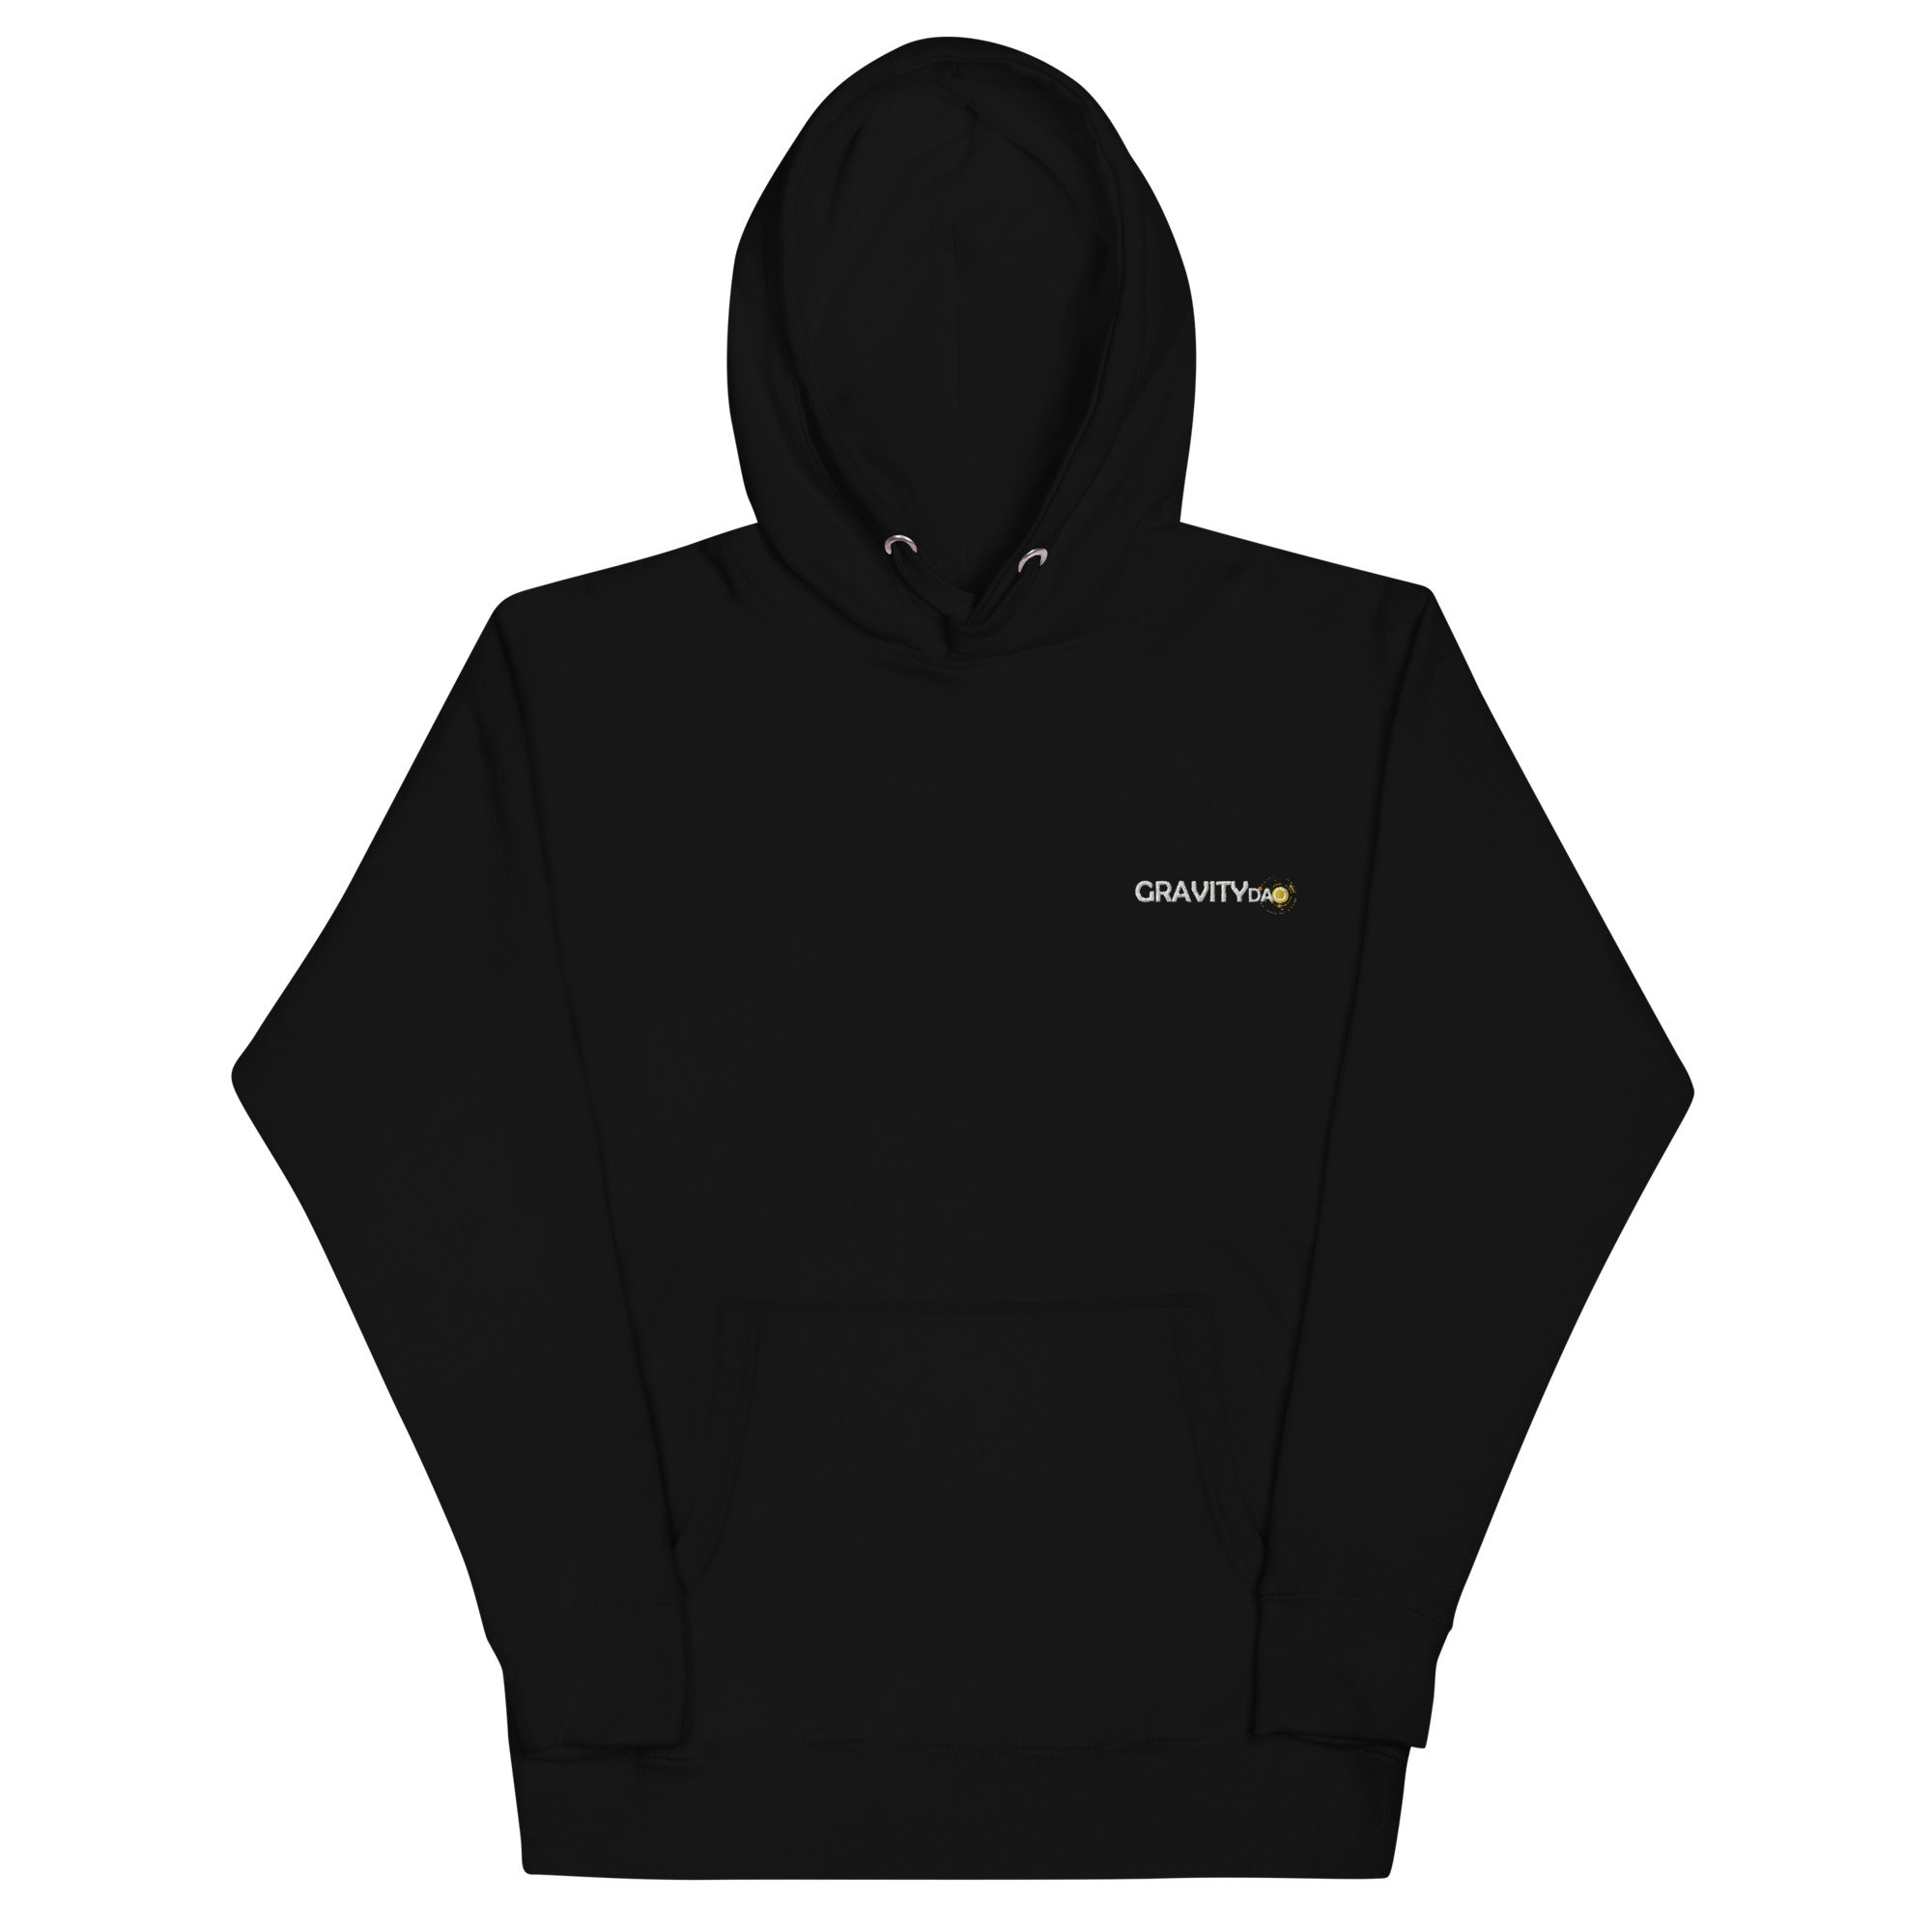 unisex-premium-hoodie-black-front-6470a9e8a79bc.jpg